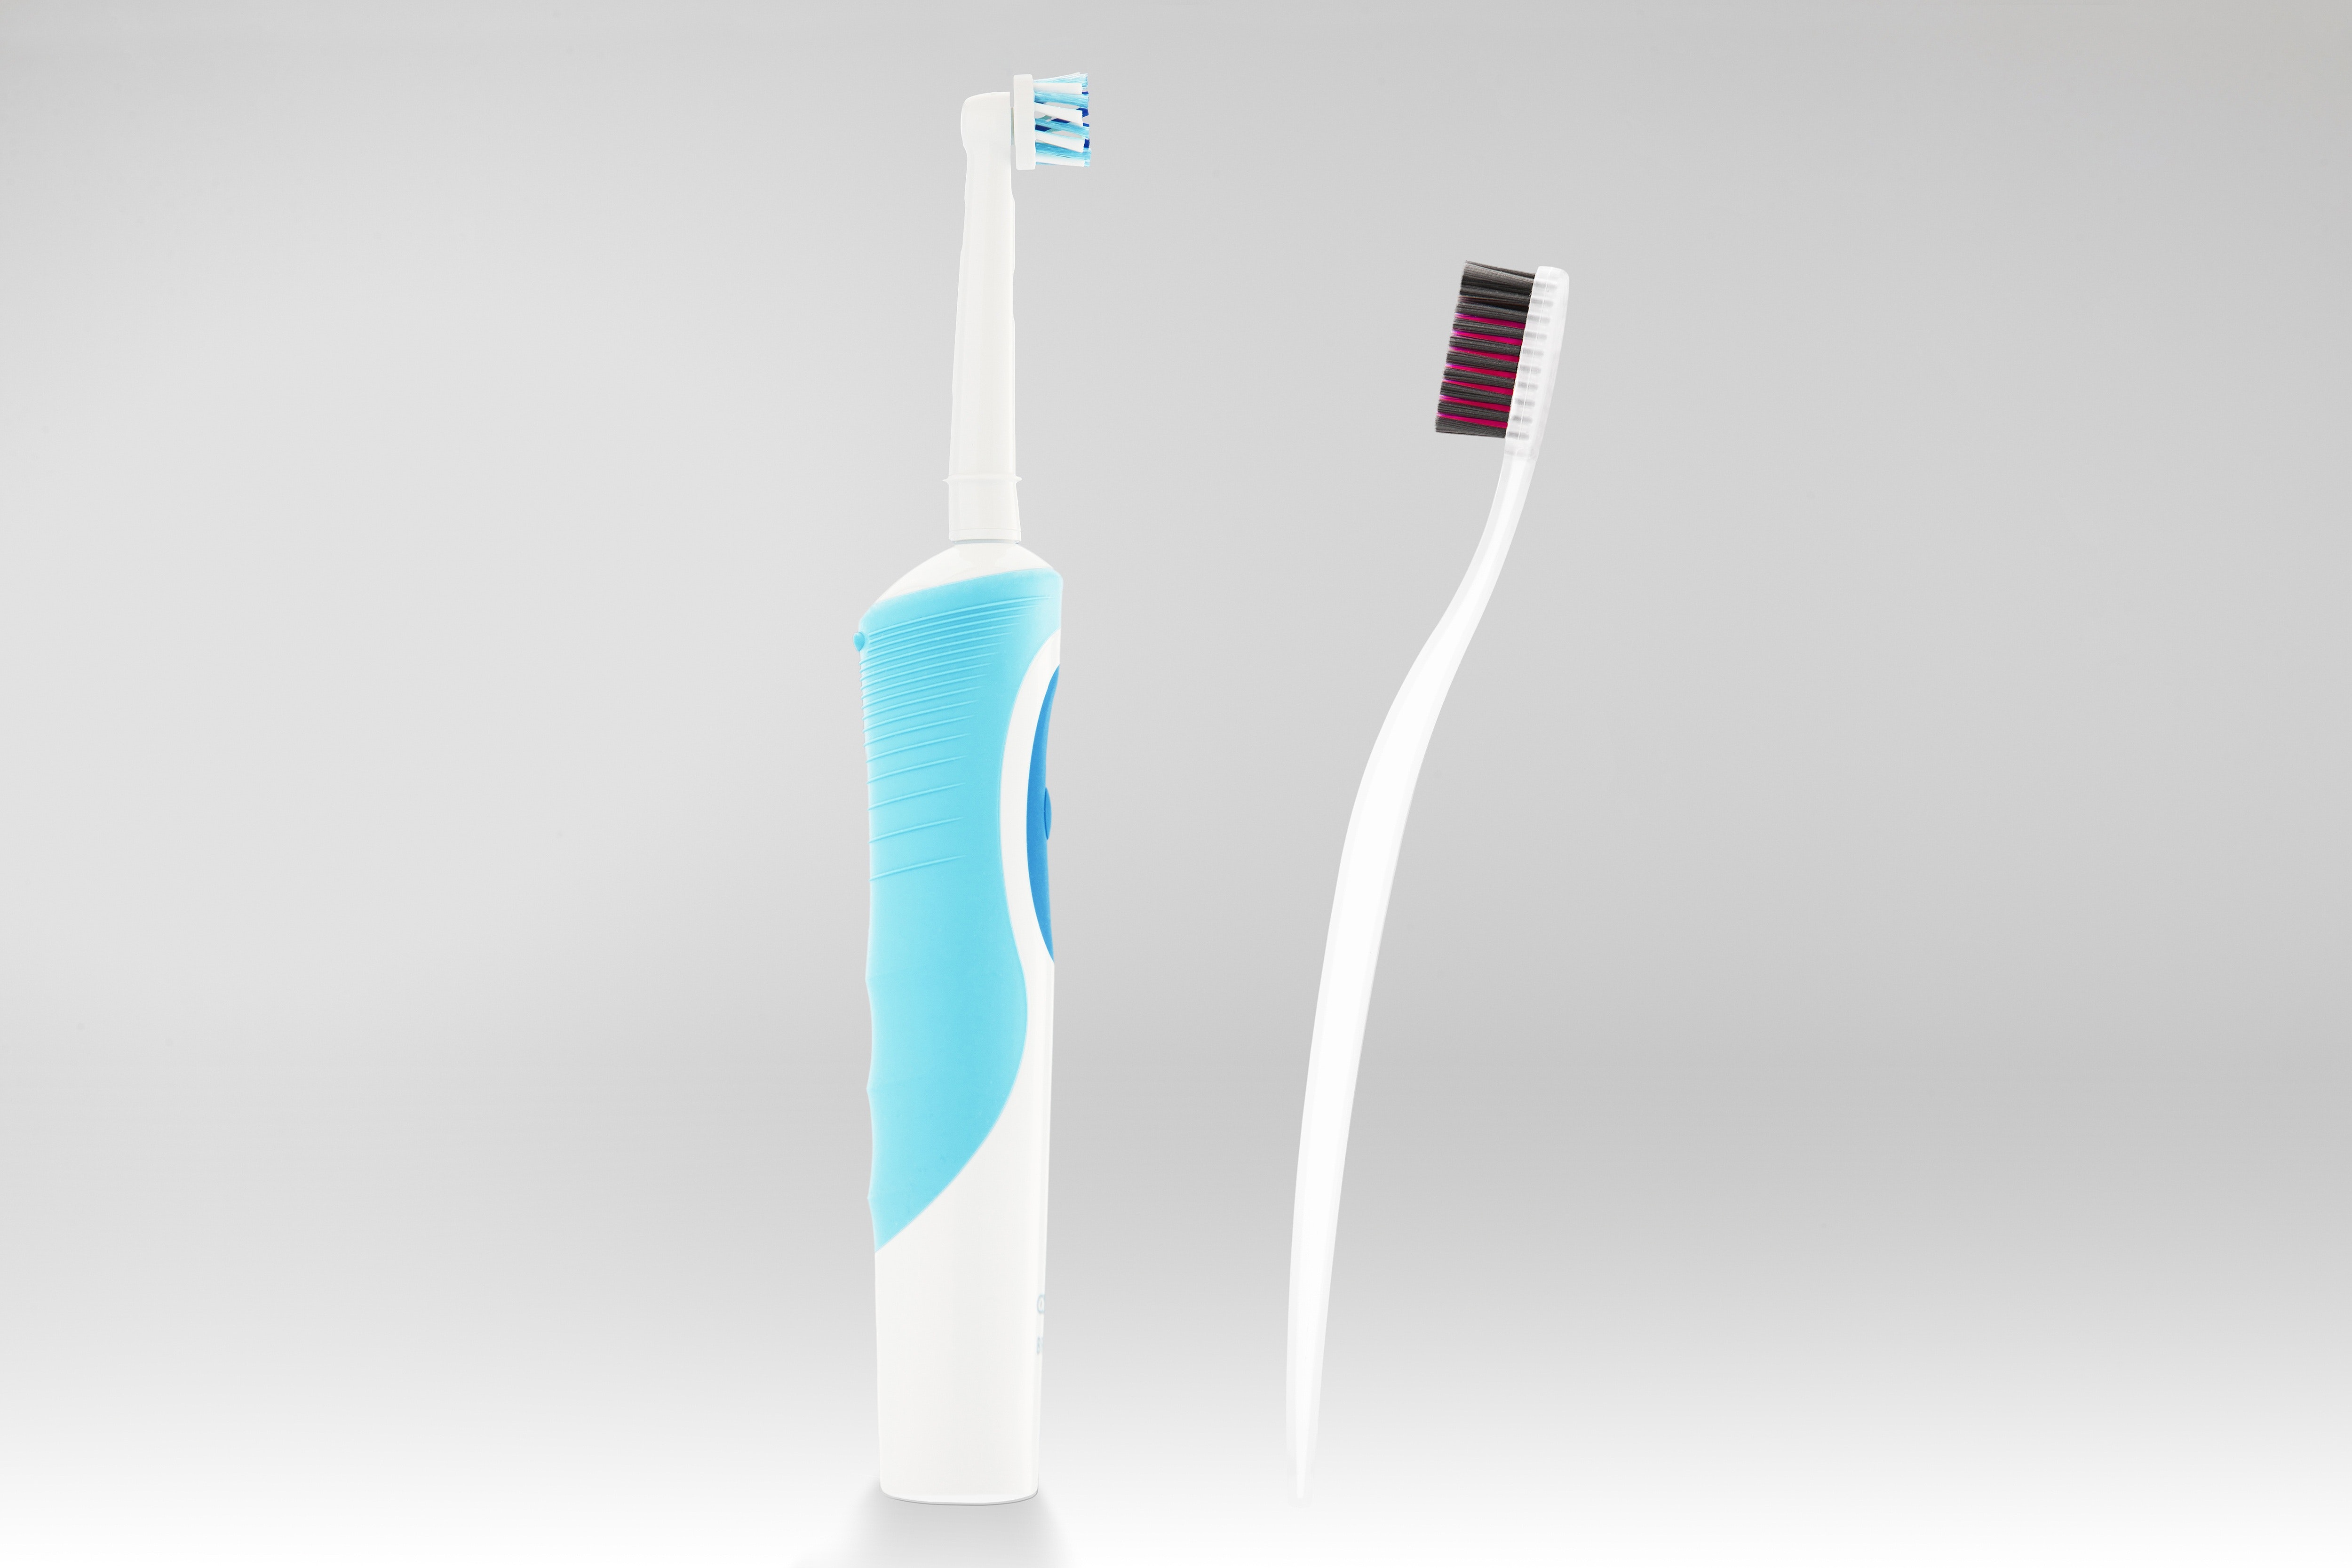 Power vs standard toothbrush